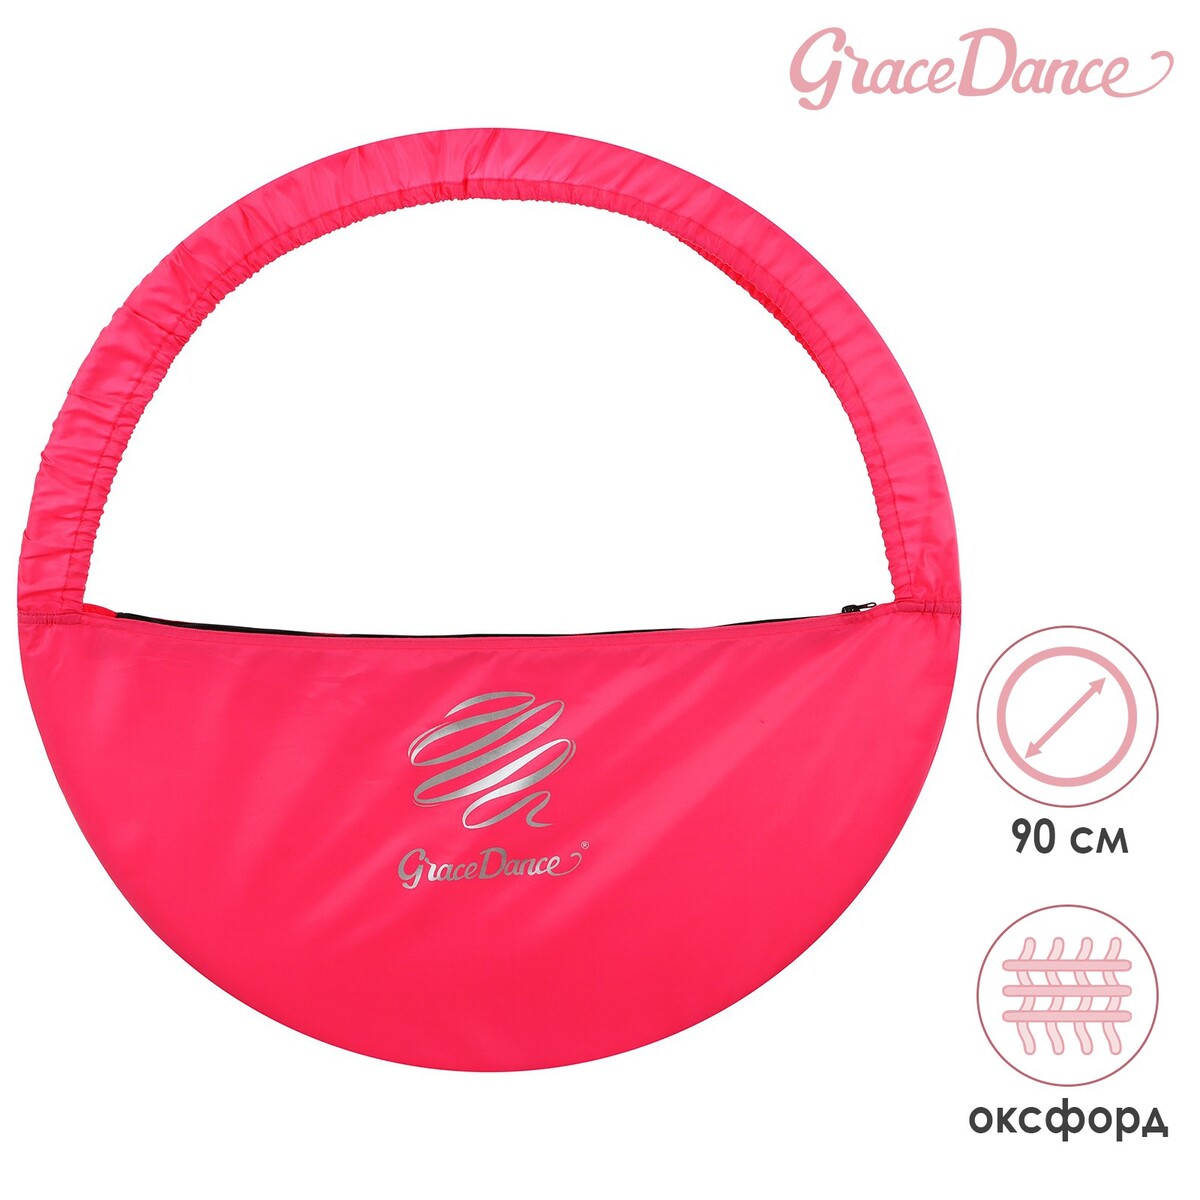 Чехол для обруча grace dance, d=90 см, цвет розовый чехол для обруча grace dance